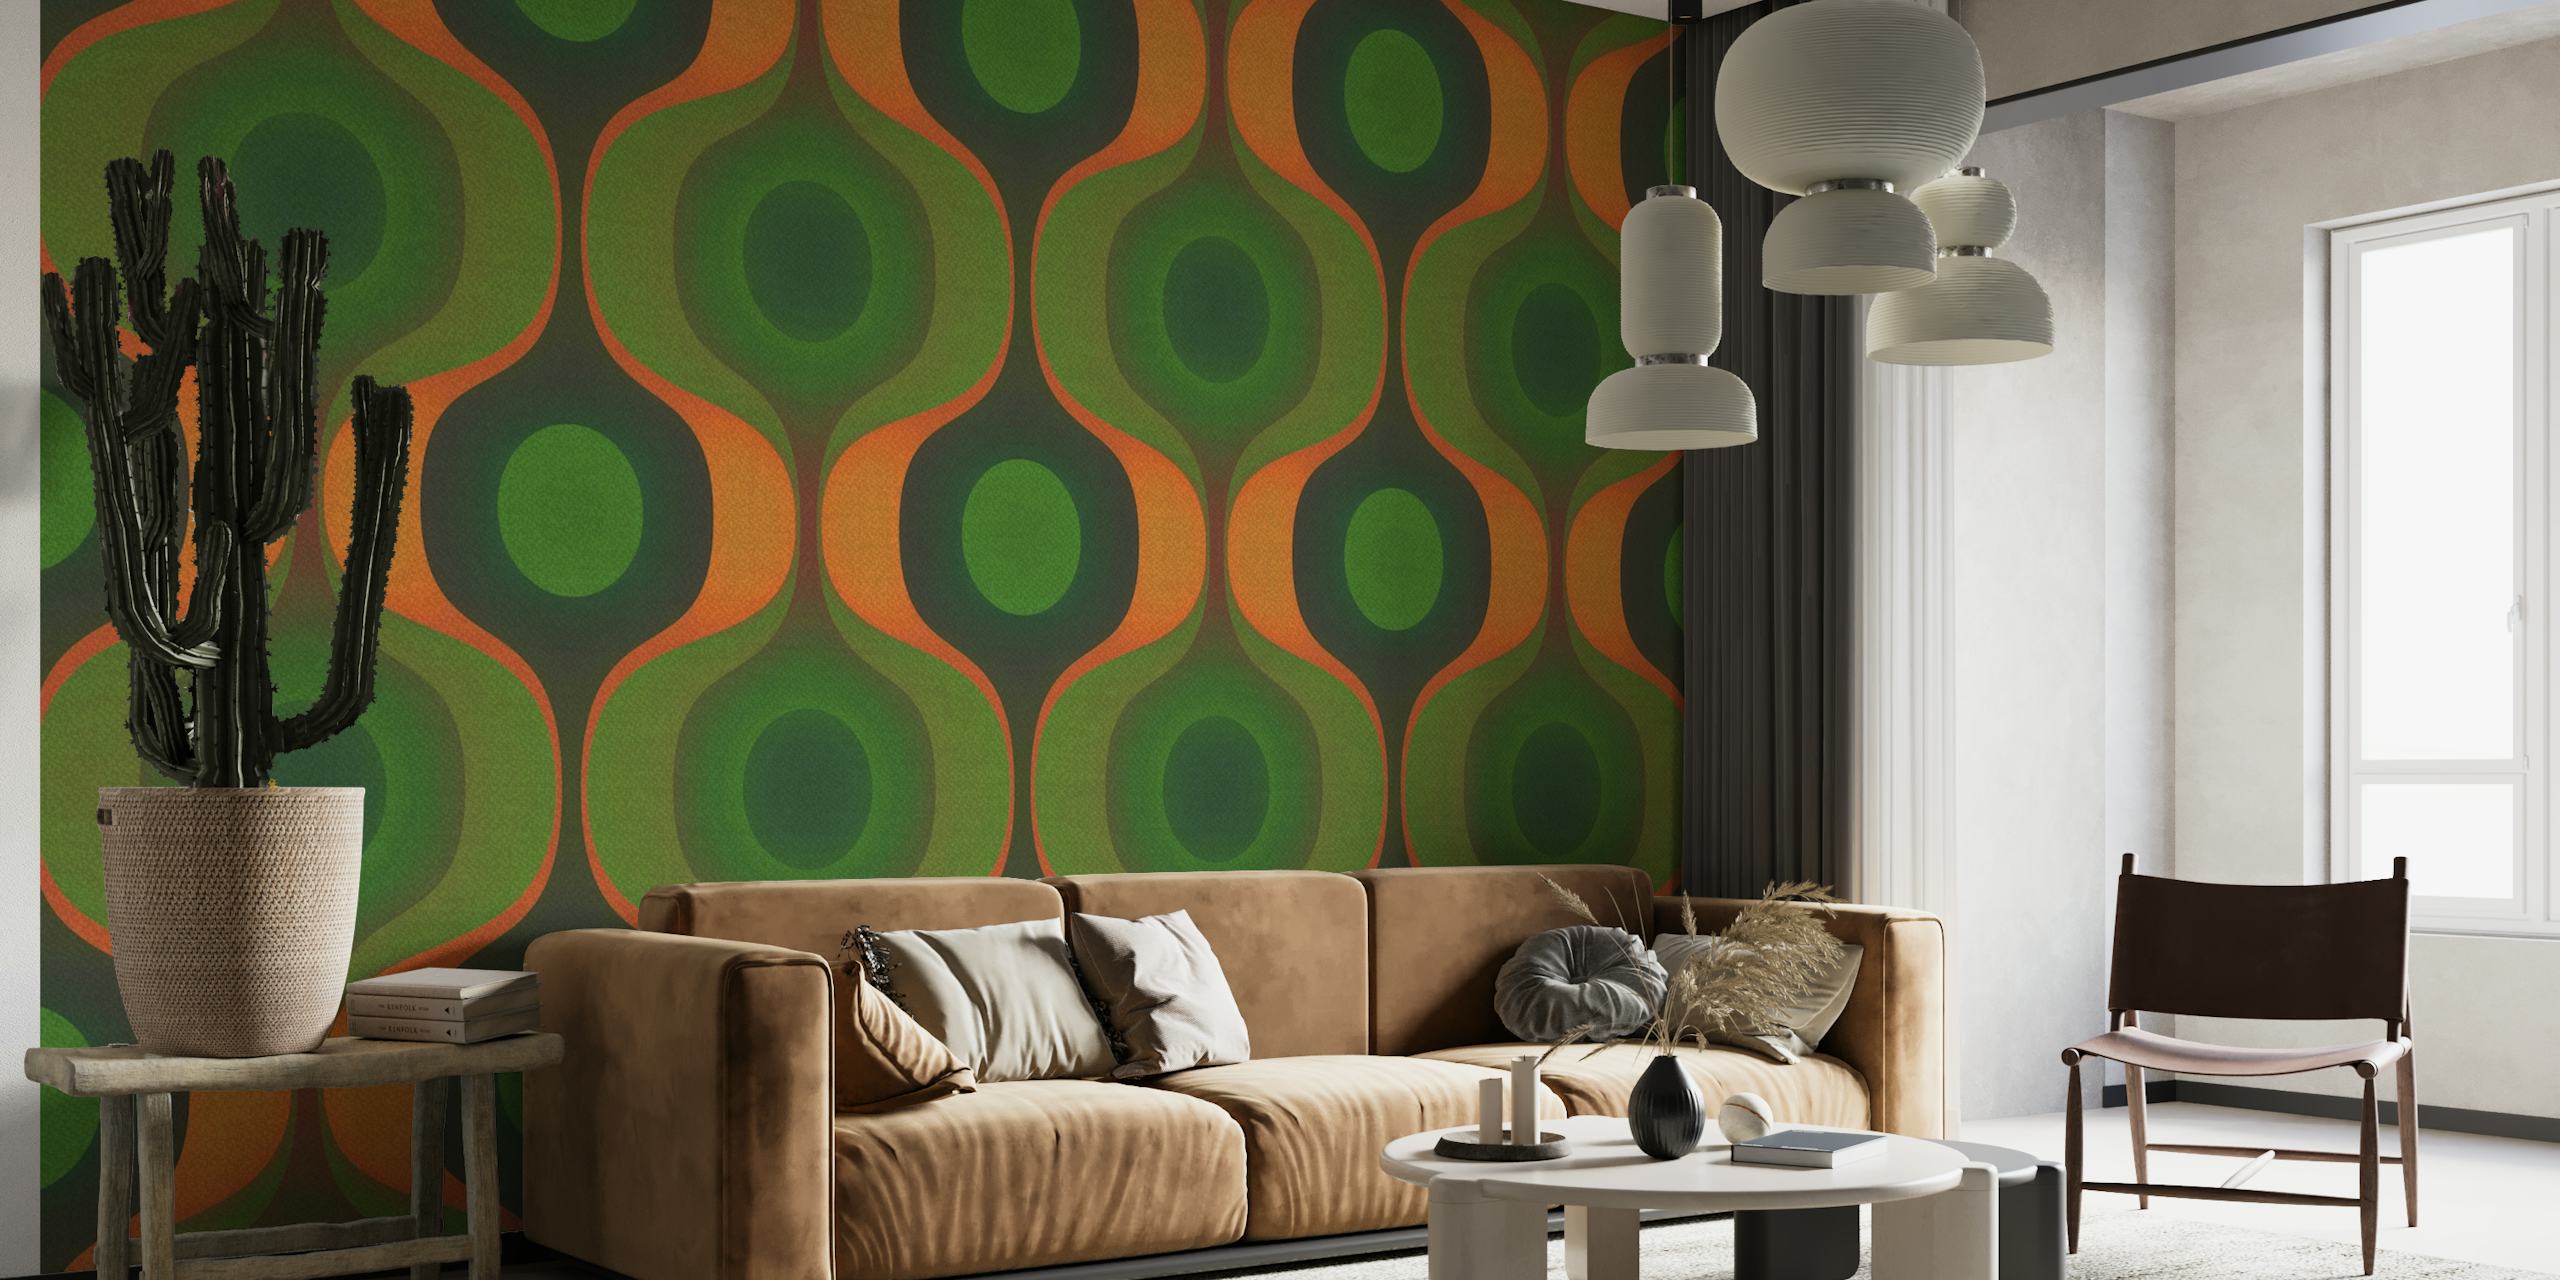 Fotomural vinílico de parede com padrão geométrico verde e laranja que lembra a década de 1970.